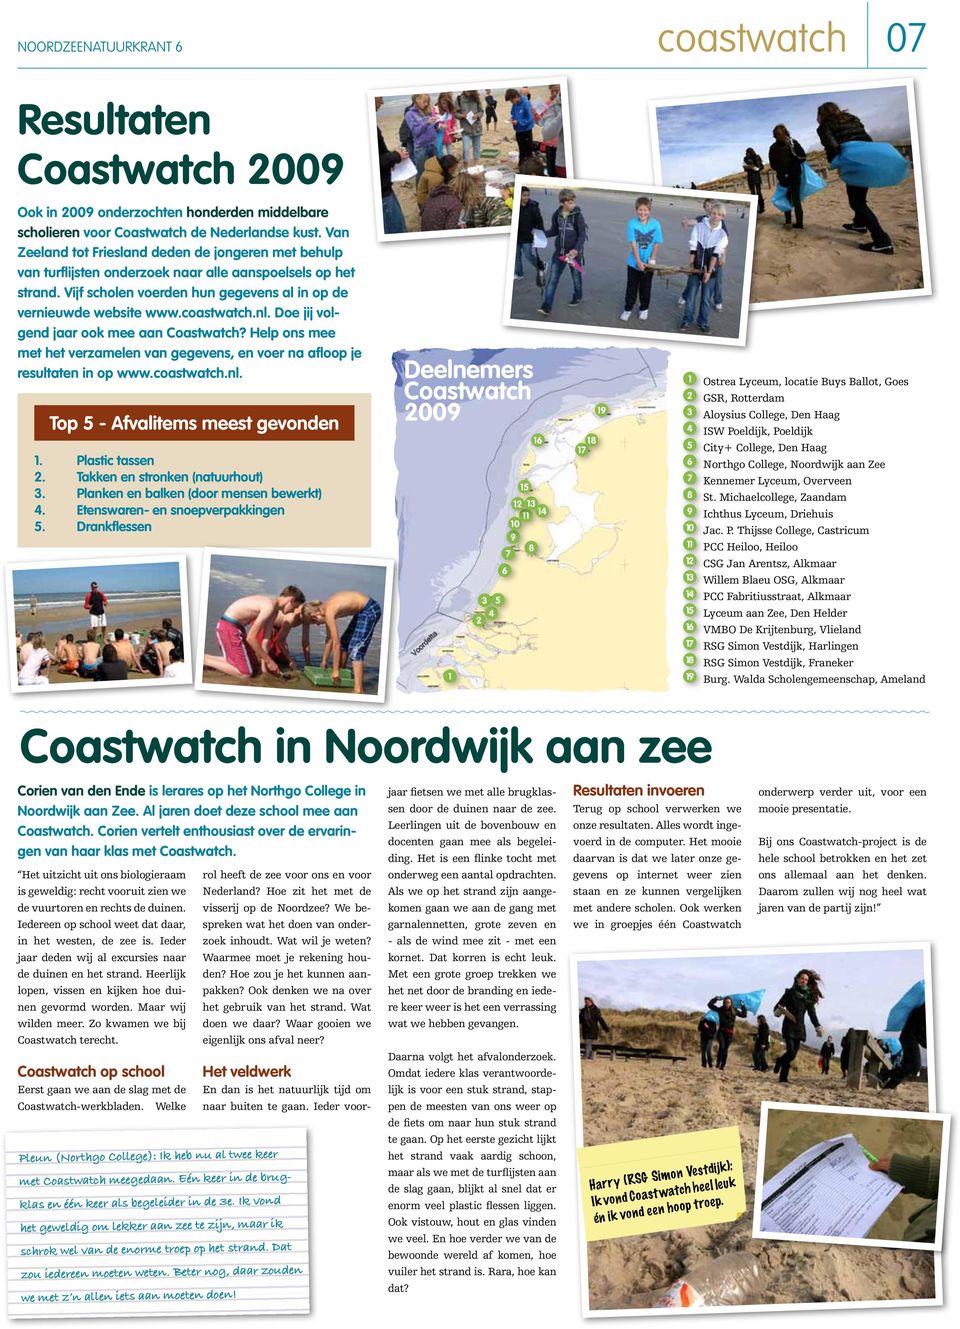 nl. Doe jij volgend jaar ook mee aan Coastwatch? Help ons mee met het verzamelen van gegevens, en voer na afloop je resultaten in op www.coastwatch.nl. Top 5 - Afvalitems meest gevonden 1.